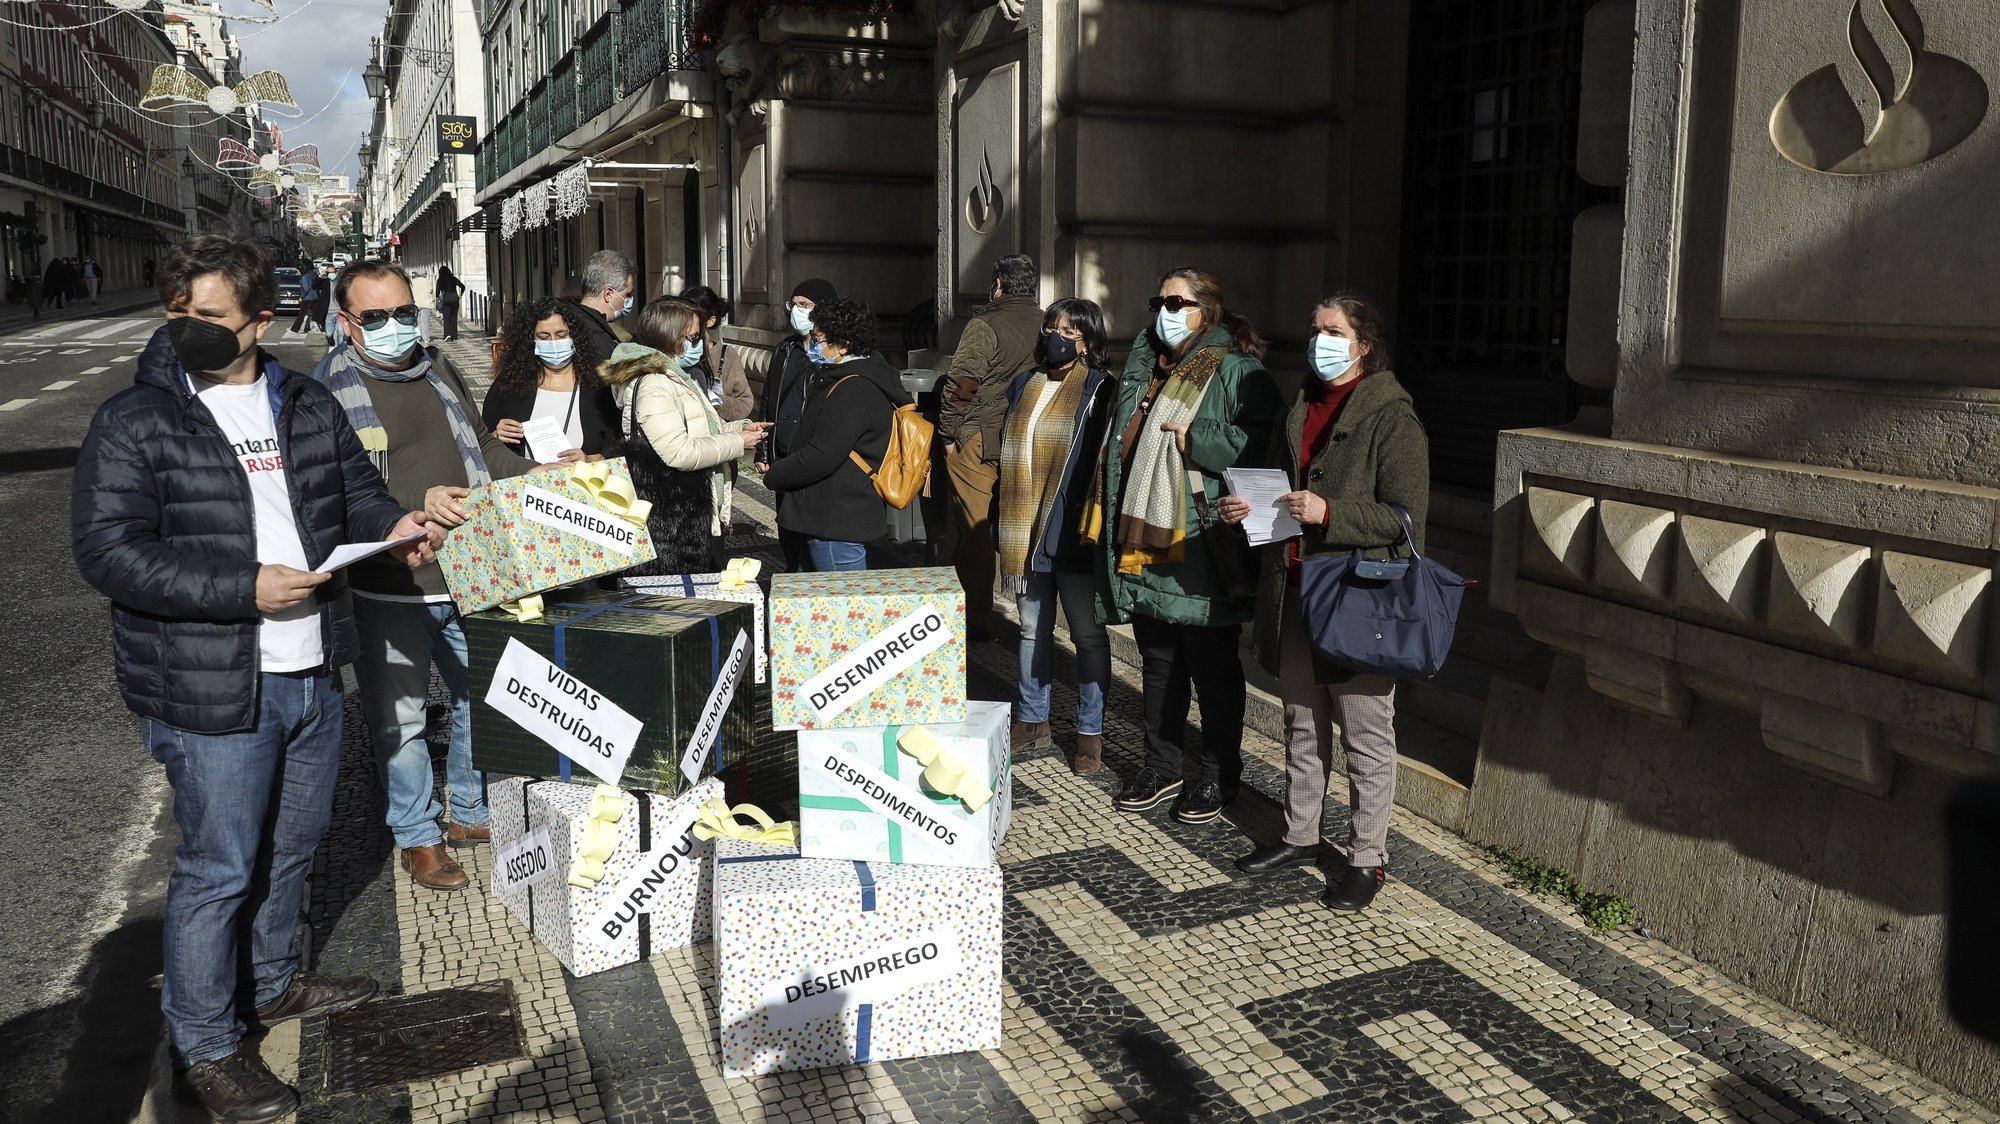 Manifestação de trabalhadores do Banco Santander Totta, organizada pelo Movimento de Ação Anti-Despedimentos no Banco Santander Totta, em Lisboa, 06 de janeiro de 2022. Os trabalhadores contestam o despedimento coletivo e exigem a reintegração no banco. MIGUEL A. LOPES/LUSA